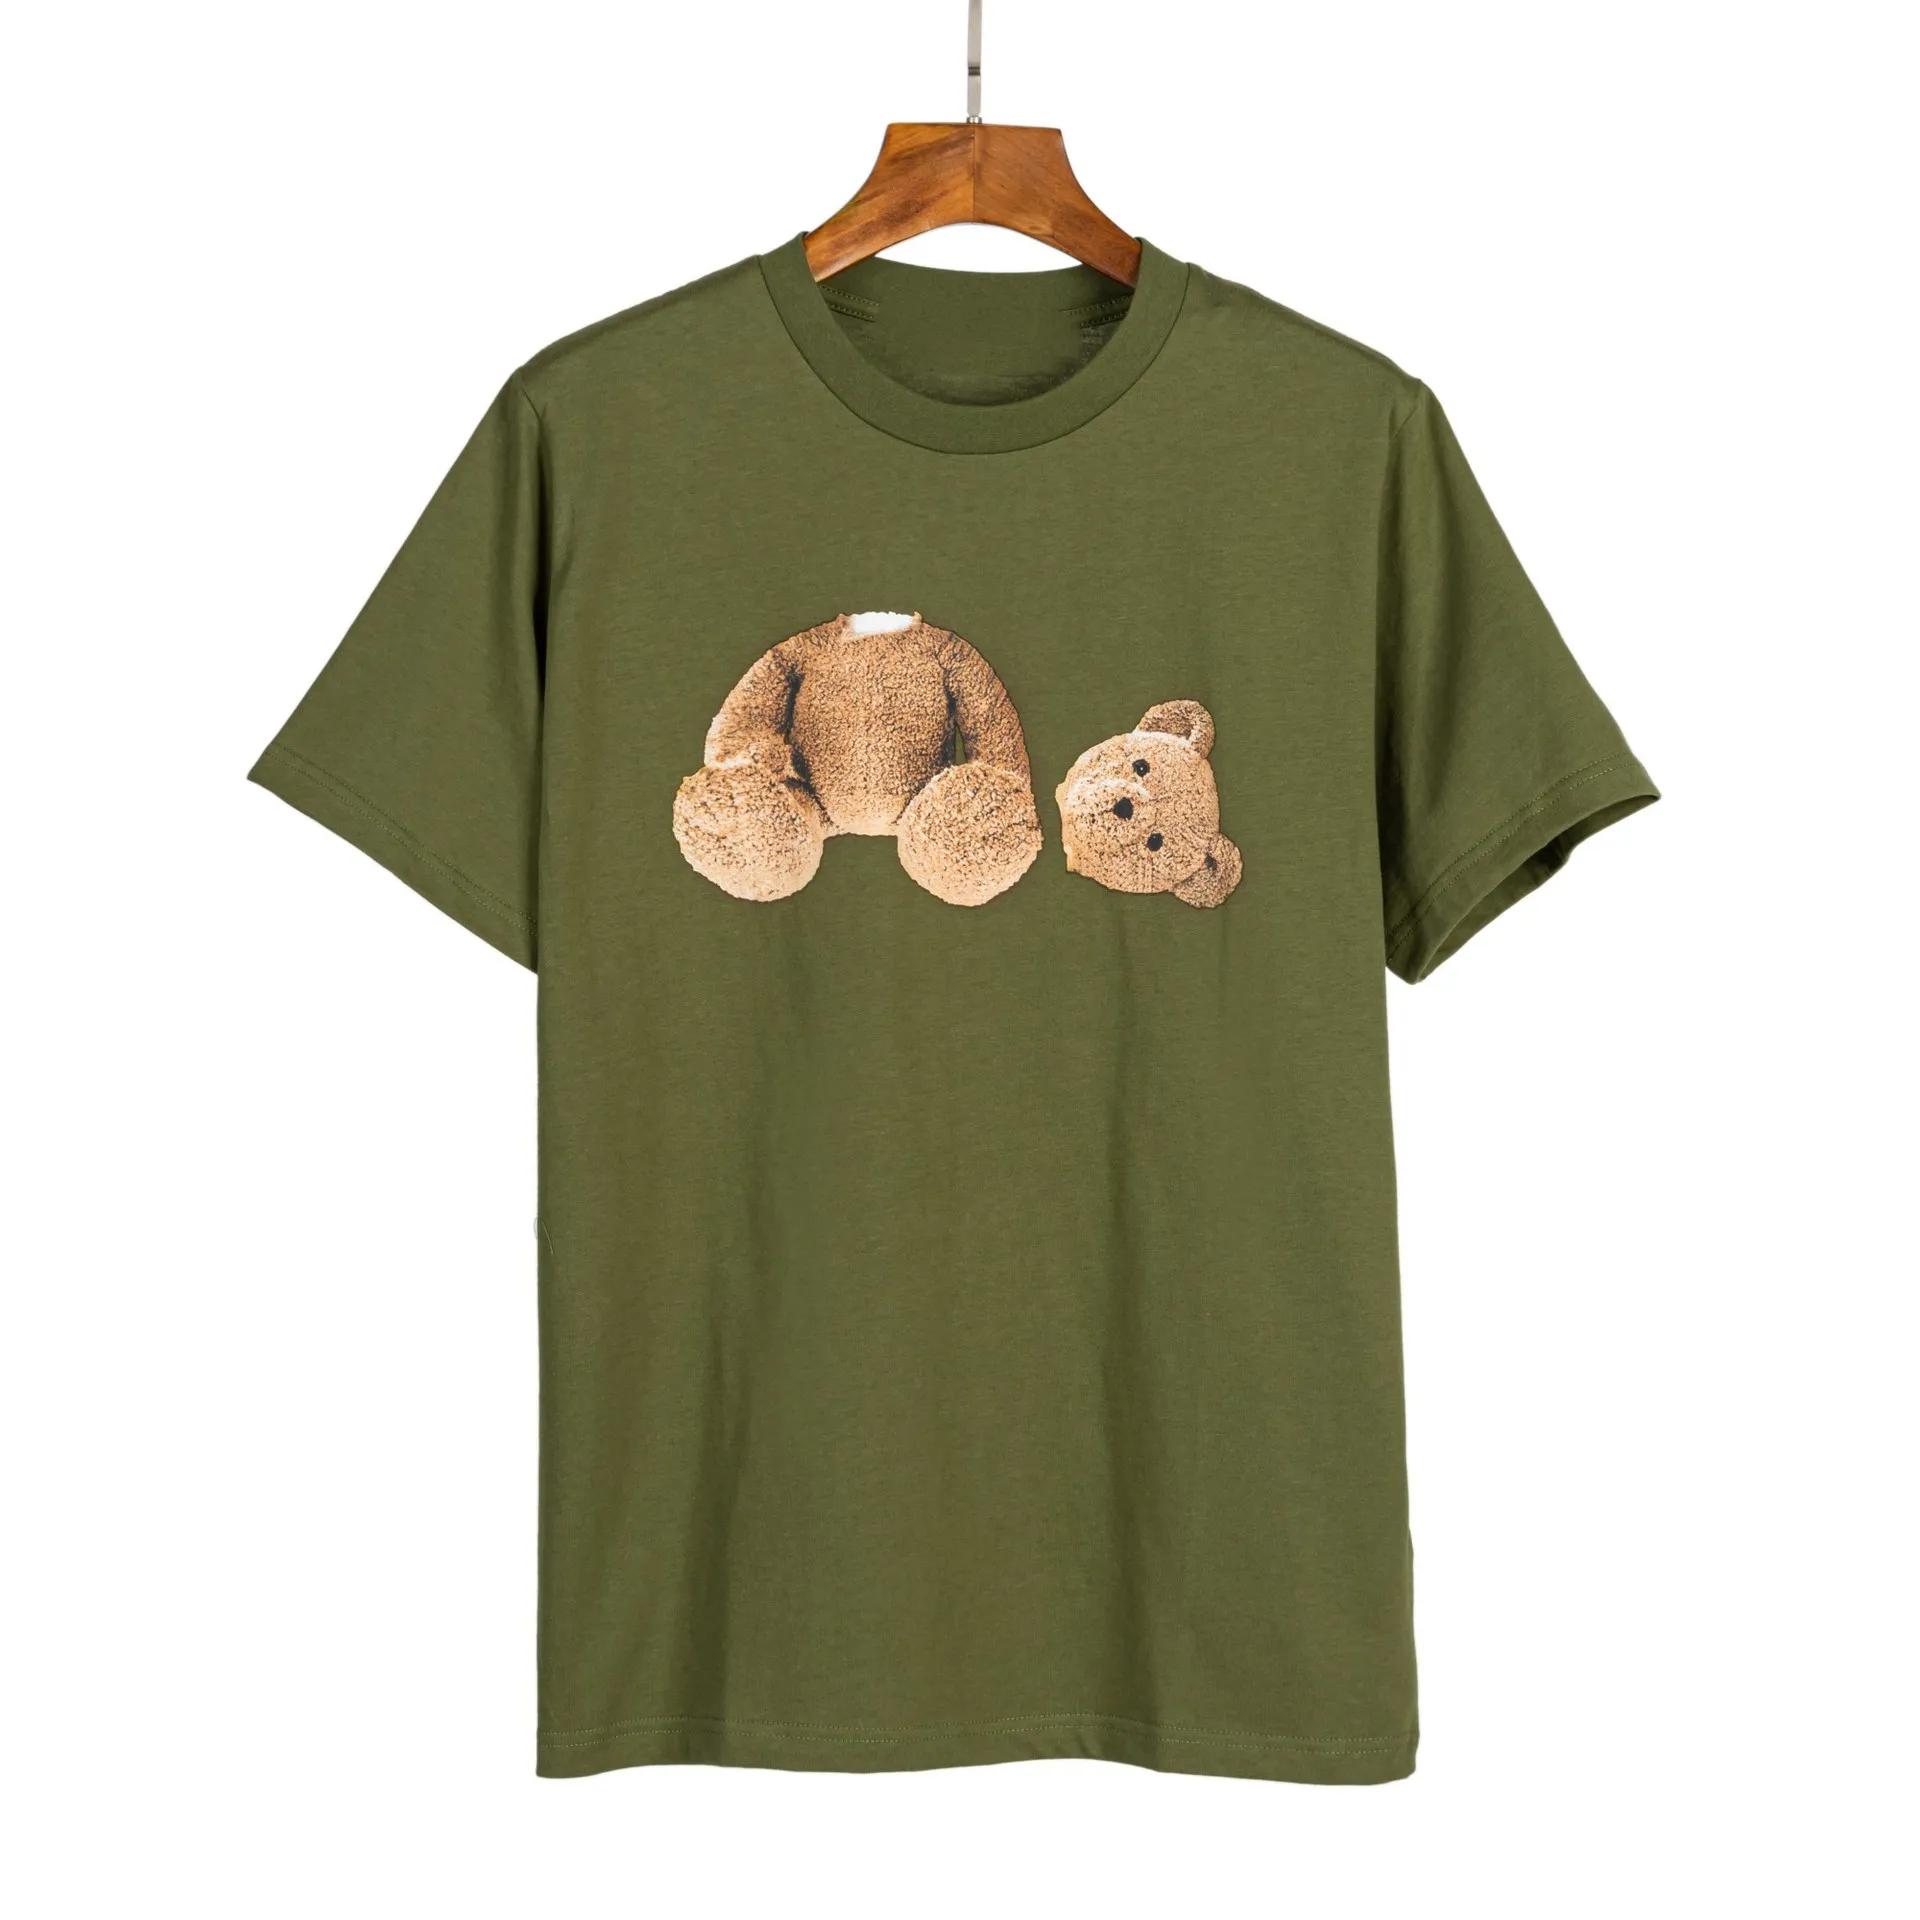 티셔츠 디자이너 새 옷 티 부러진 곰 만화 인쇄 편지 짧은 소매 캐주얼 둥근 목 티셔츠 느슨한 100%면 셔츠 야생 탑 빈티지 셔츠 크기 S-XL